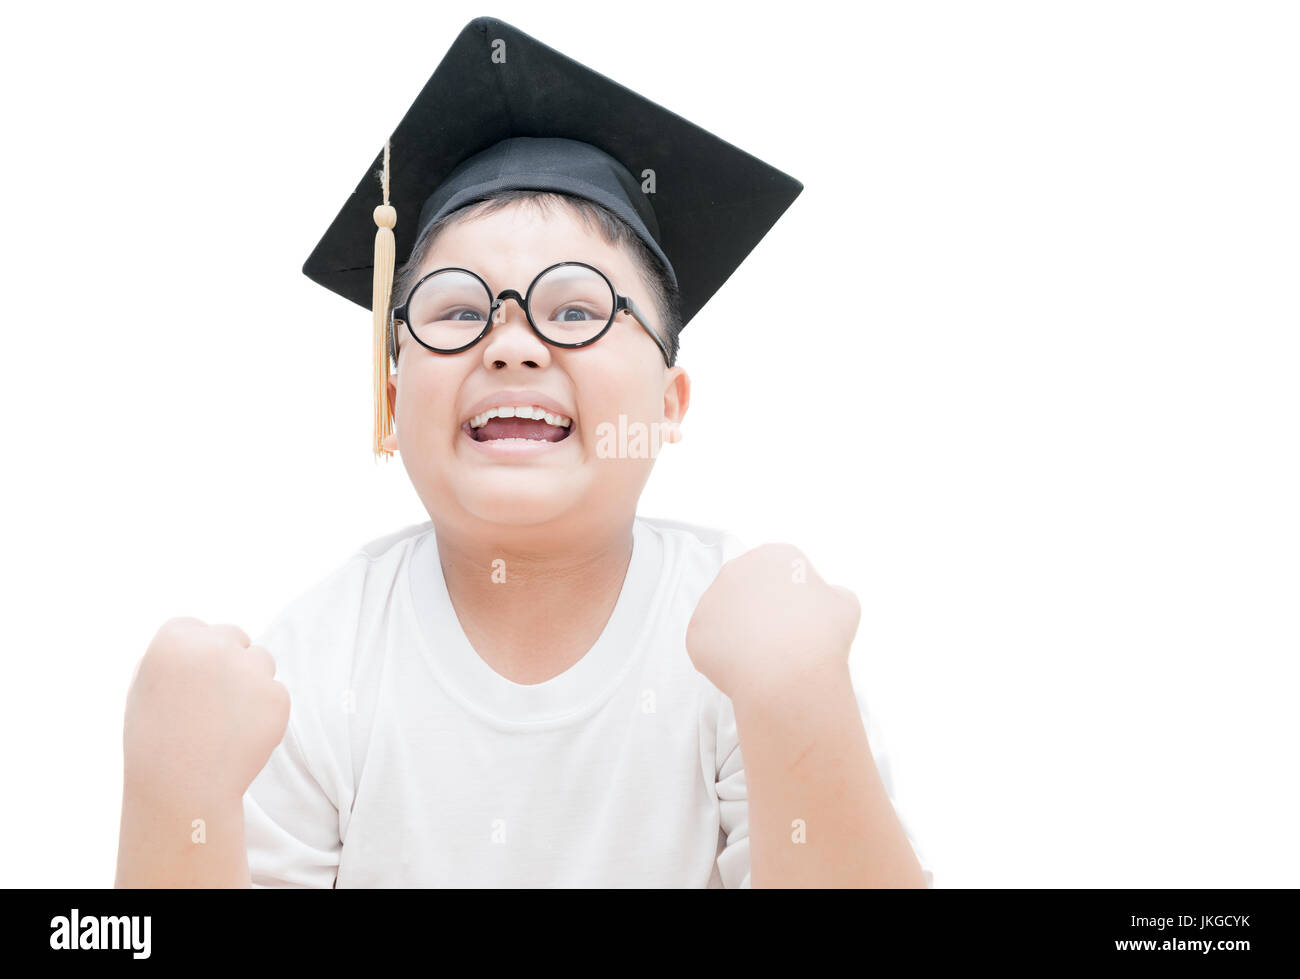 Glücklich und sehr froh, dass asiatische Kind Schulabsolvent Graduation cap isoliert auf weißem Hintergrund Stockfoto